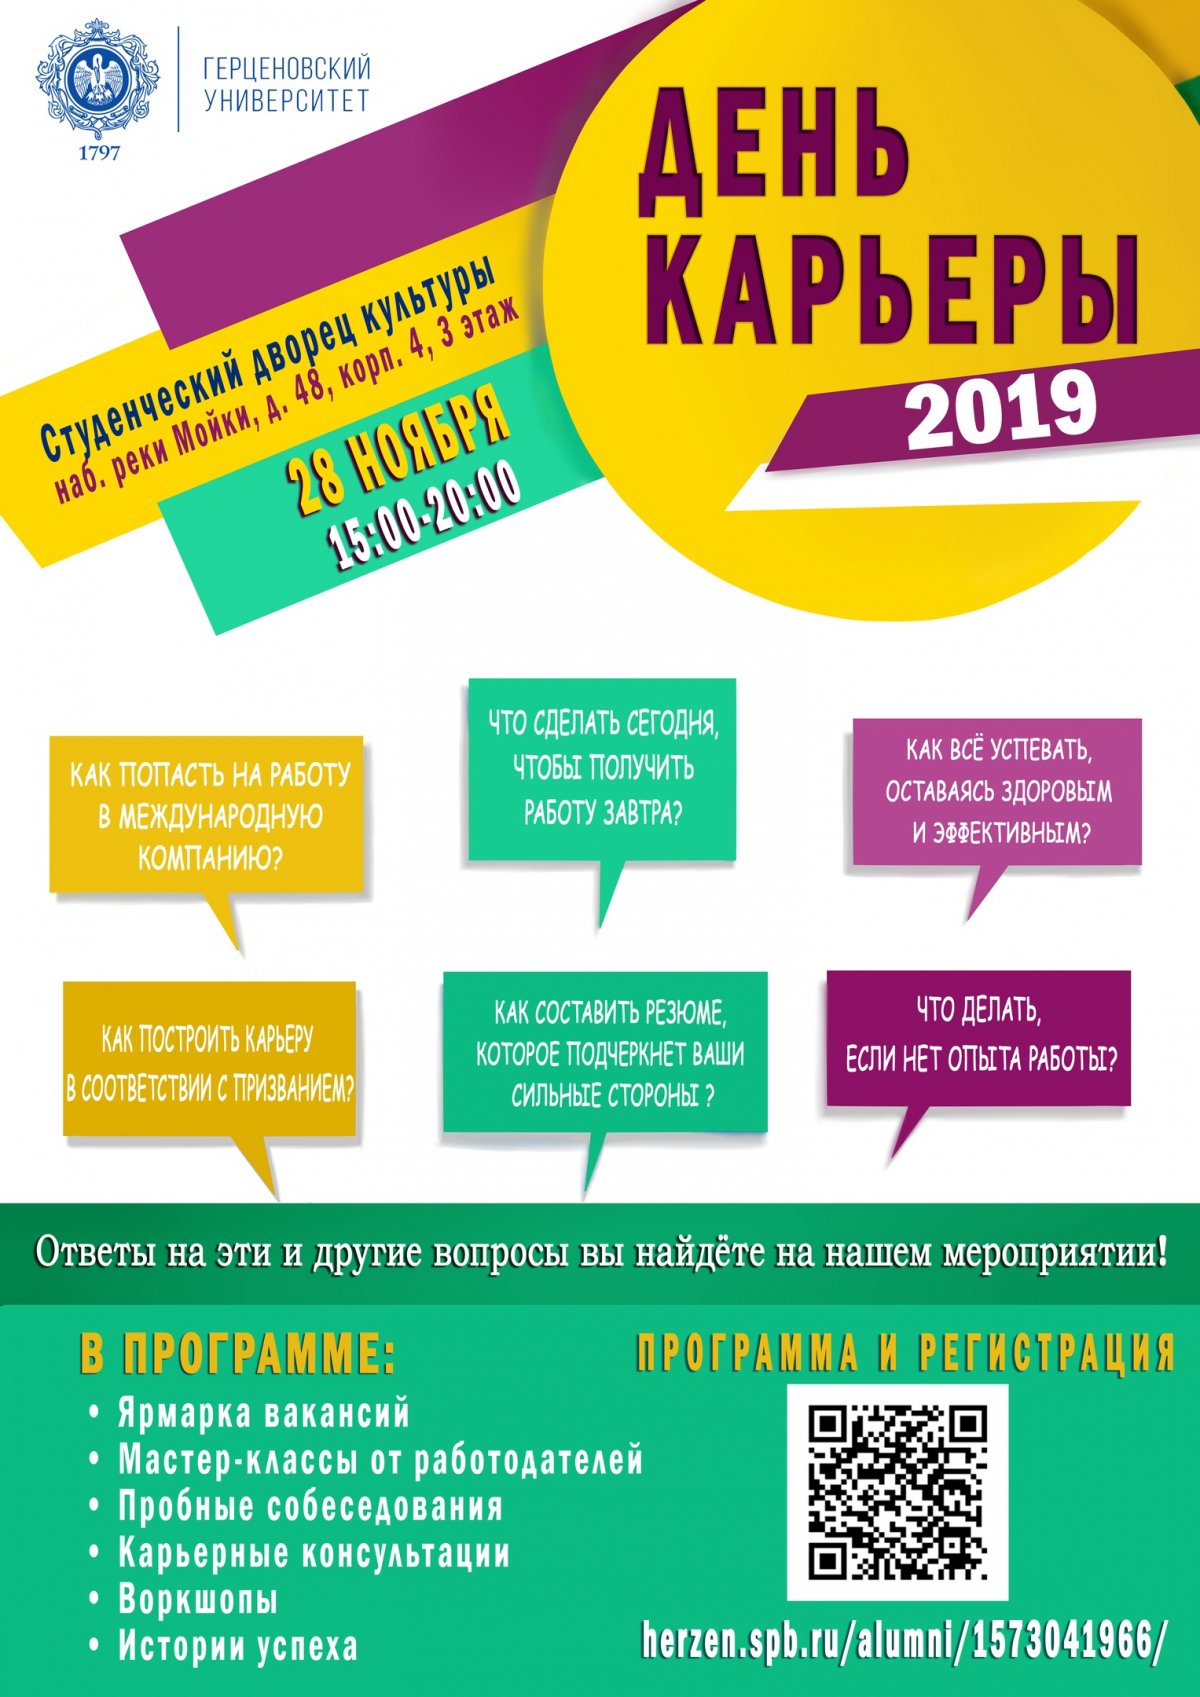 28 ноября 2019 года в РГПУ им. А. И. Герцена состоится День карьеры